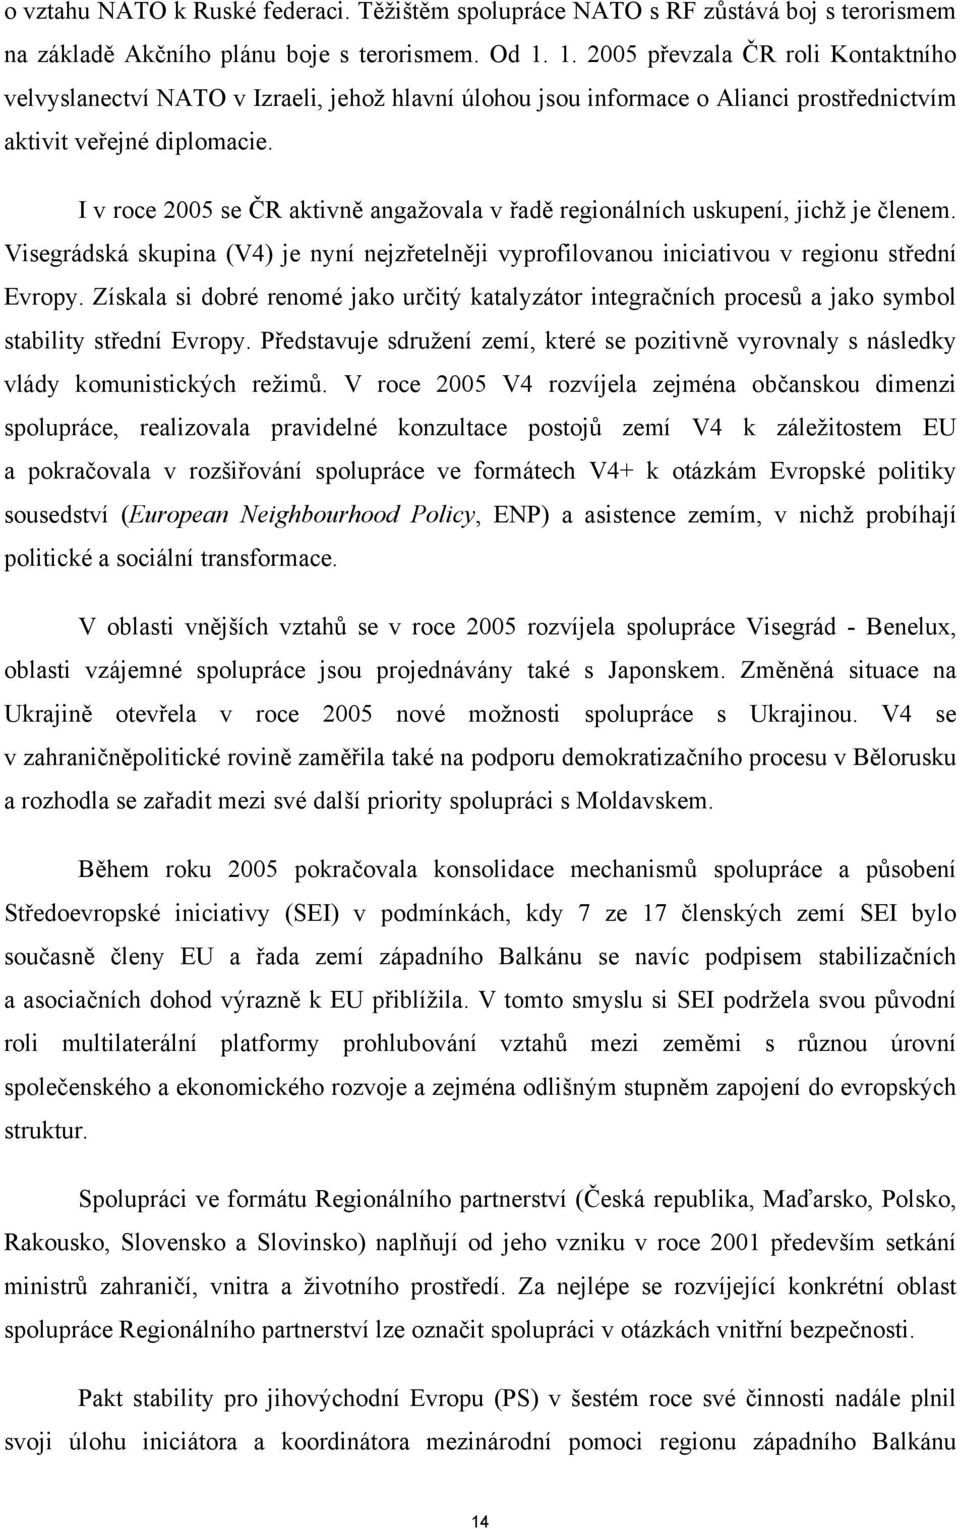 I v roce 2005 se ČR aktivně angažovala v řadě regionálních uskupení, jichž je členem. Visegrádská skupina (V4) je nyní nejzřetelněji vyprofilovanou iniciativou v regionu střední Evropy.